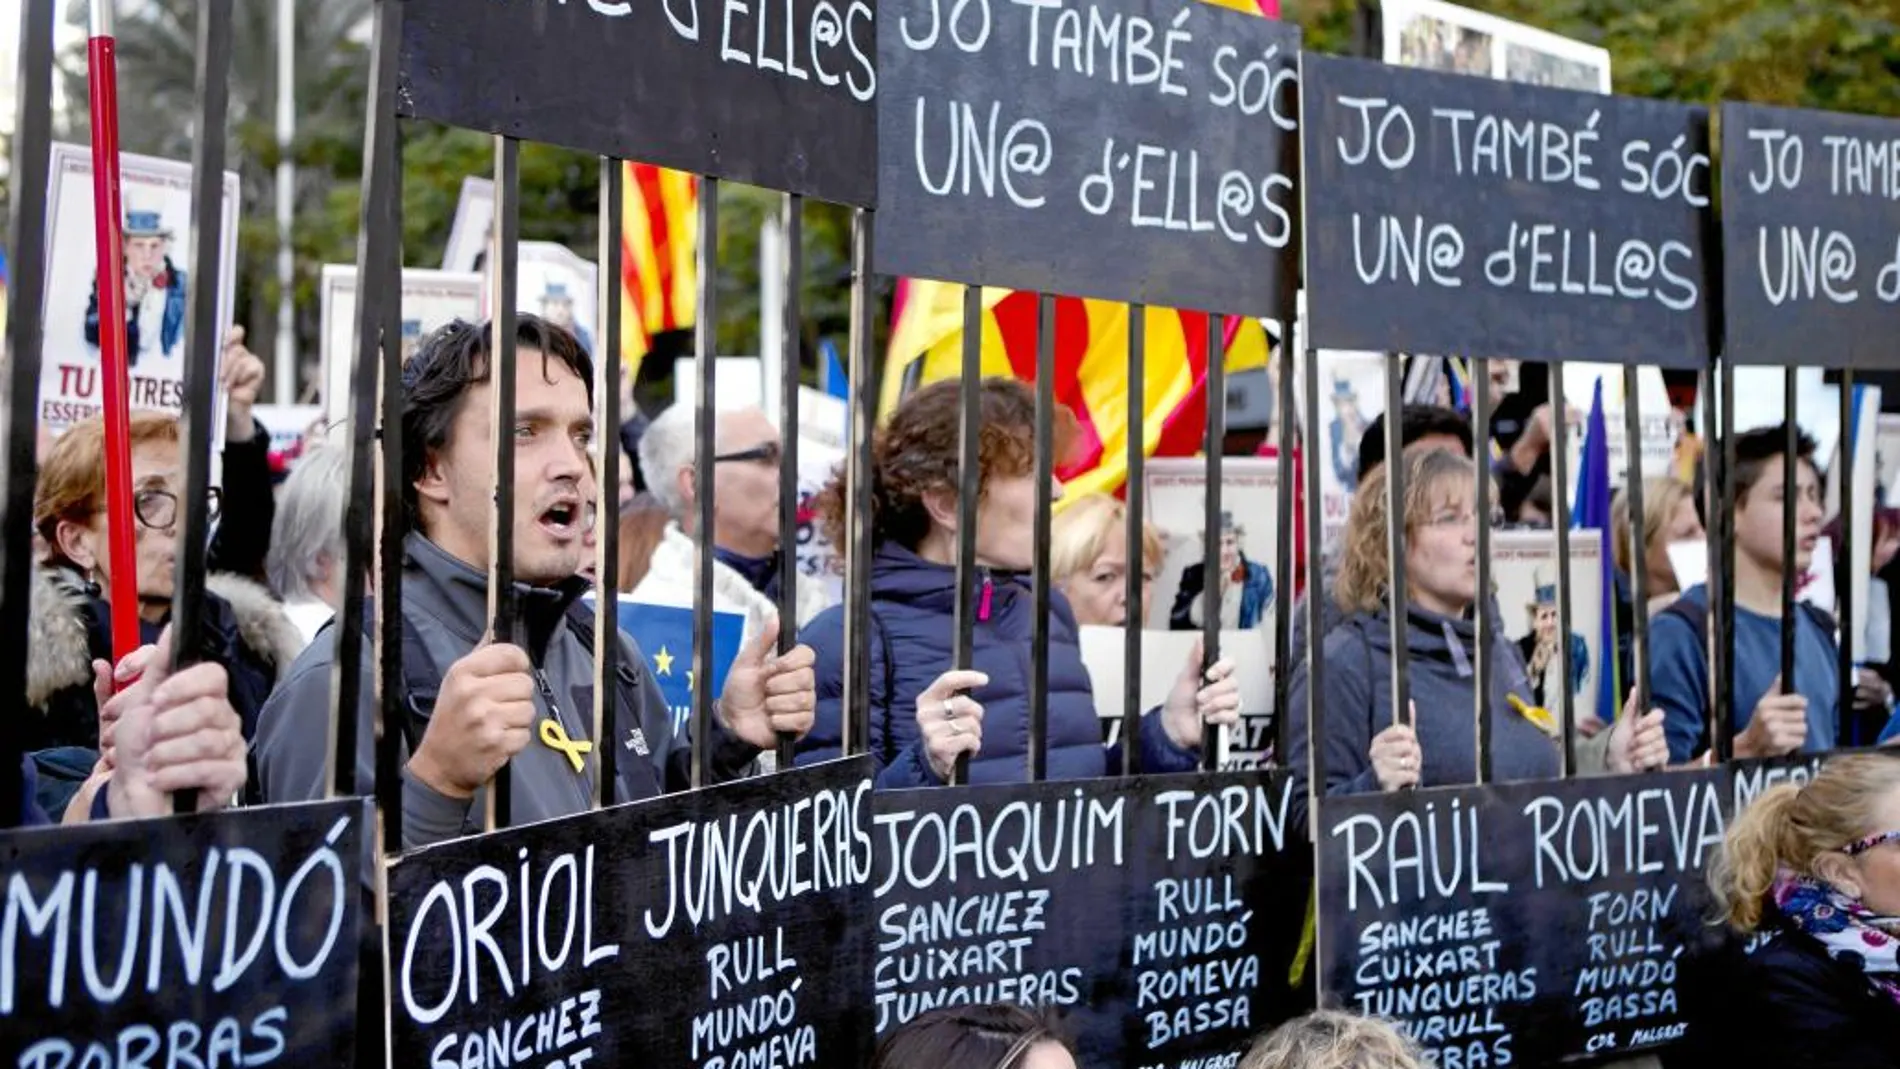 750.000 personasse concentraron ayer, según la Guardia Urbana, en Barcelona para pedir la liberación de los «jordis» y los consellers de la Generalitat cesados